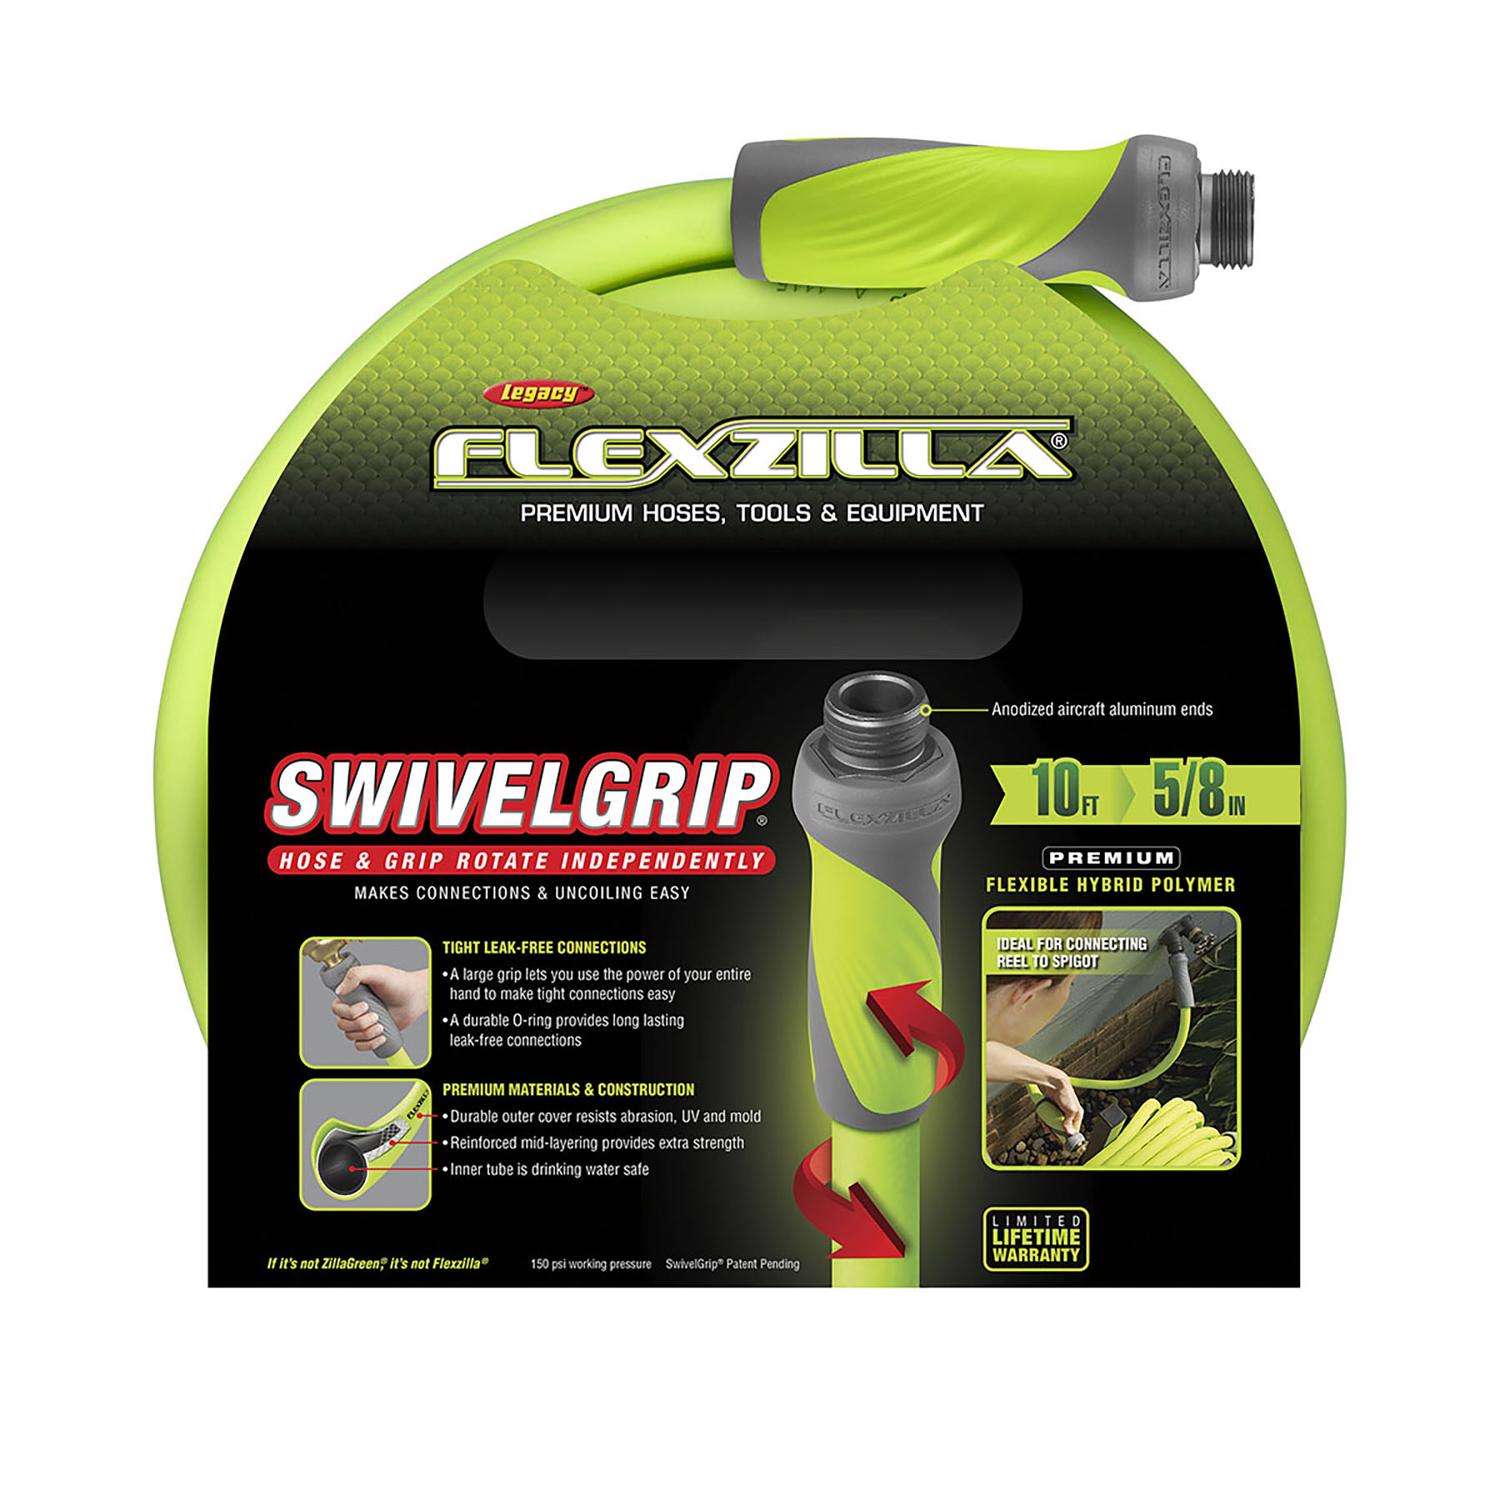 Flexzilla 5/8 x 10' SwivelGrip Lead in Hose